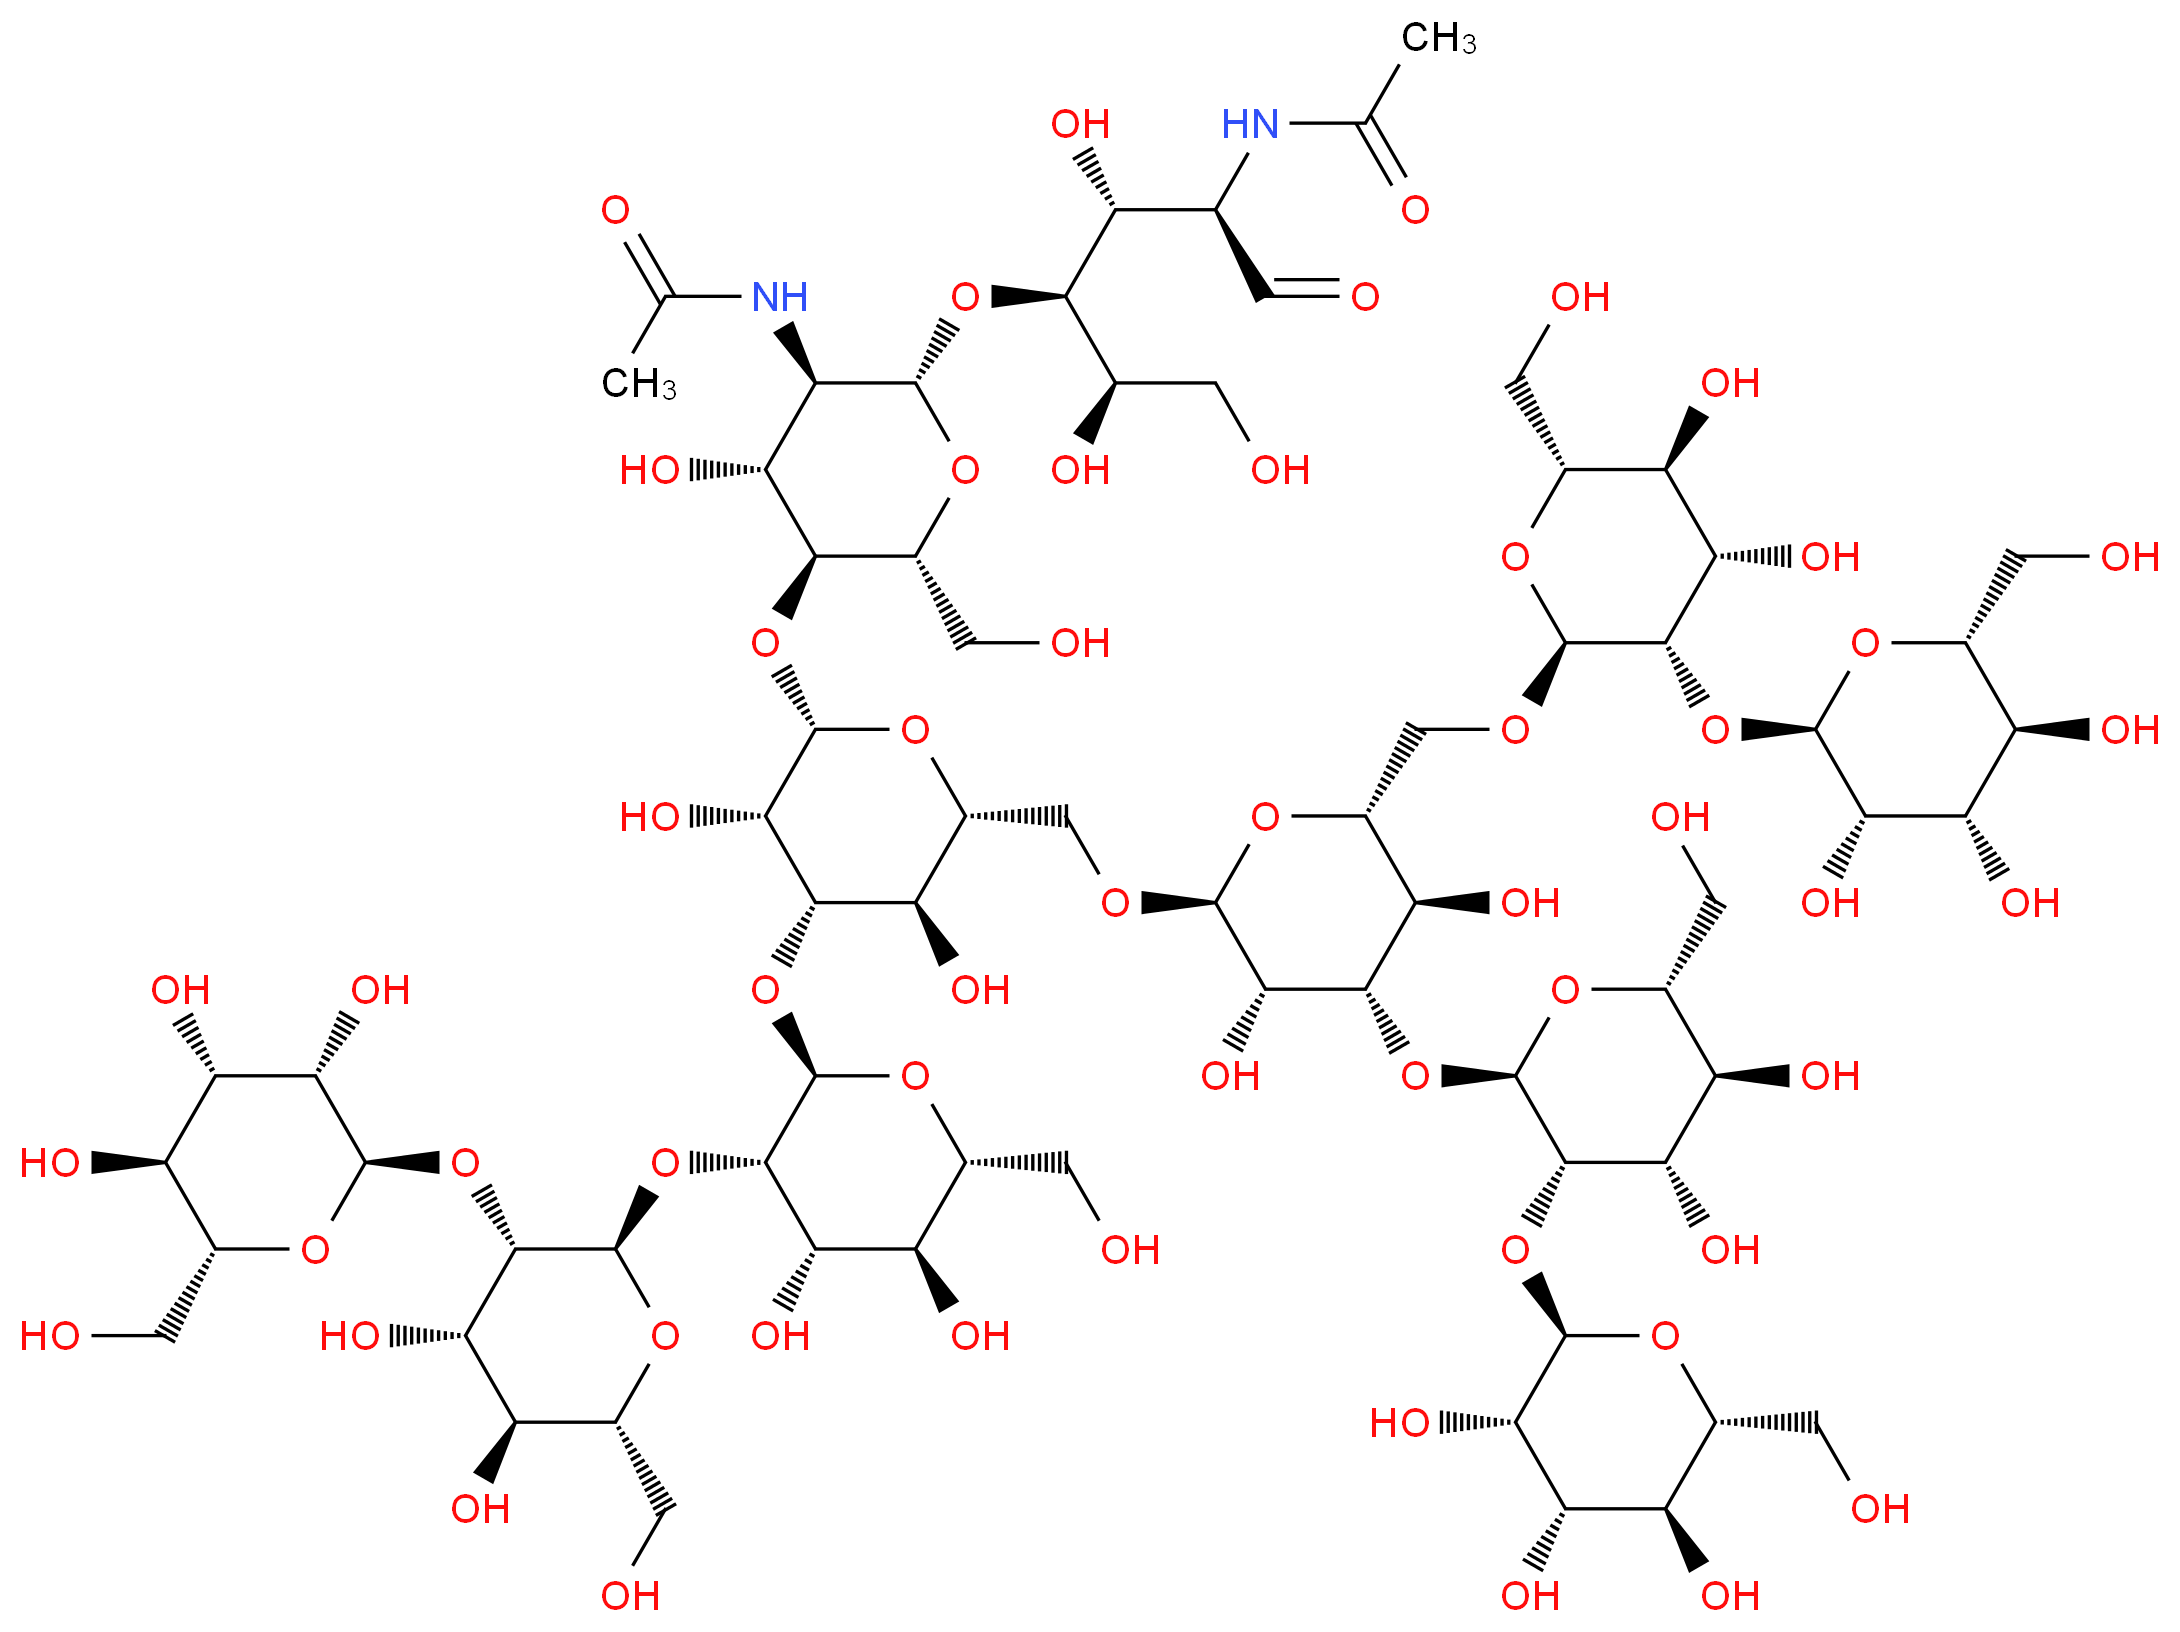 N-[(2R,3R,4S,5R)-4-{[(2S,3R,4R,5S,6R)-5-{[(2S,3S,4S,5R,6R)-4-{[(2R,3S,4S,5S,6R)-3-{[(2R,3S,4S,5S,6R)-4,5-dihydroxy-6-(hydroxymethyl)-3-{[(2R,3S,4S,5S,6R)-3,4,5-trihydroxy-6-(hydroxymethyl)oxan-2-yl]oxy}oxan-2-yl]oxy}-4,5-dihydroxy-6-(hydroxymethyl)oxan-2-yl]oxy}-6-({[(2S,3S,4S,5R,6R)-4-{[(2R,3S,4S,5S,6R)-4,5-dihydroxy-6-(hydroxymethyl)-3-{[(2R,3S,4S,5S,6R)-3,4,5-trihydroxy-6-(hydroxymethyl)oxan-2-yl]oxy}oxan-2-yl]oxy}-6-({[(2S,3S,4S,5S,6R)-4,5-dihydroxy-6-(hydroxymethyl)-3-{[(2R,3S,4S,5S,6R)-3,4,5-trihydroxy-6-(hydroxymethyl)oxan-2-yl]oxy}oxan-2-yl]oxy}methyl)-3,5-dihydroxyoxan-2-yl]oxy}methyl)-3,5-dihydroxyoxan-2-yl]oxy}-3-acetamido-4-hydroxy-6-(hydroxymethyl)oxan-2-yl]oxy}-3,5,6-trihydroxy-1-oxohexan-2-yl]acetamide_分子结构_CAS_71246-55-4